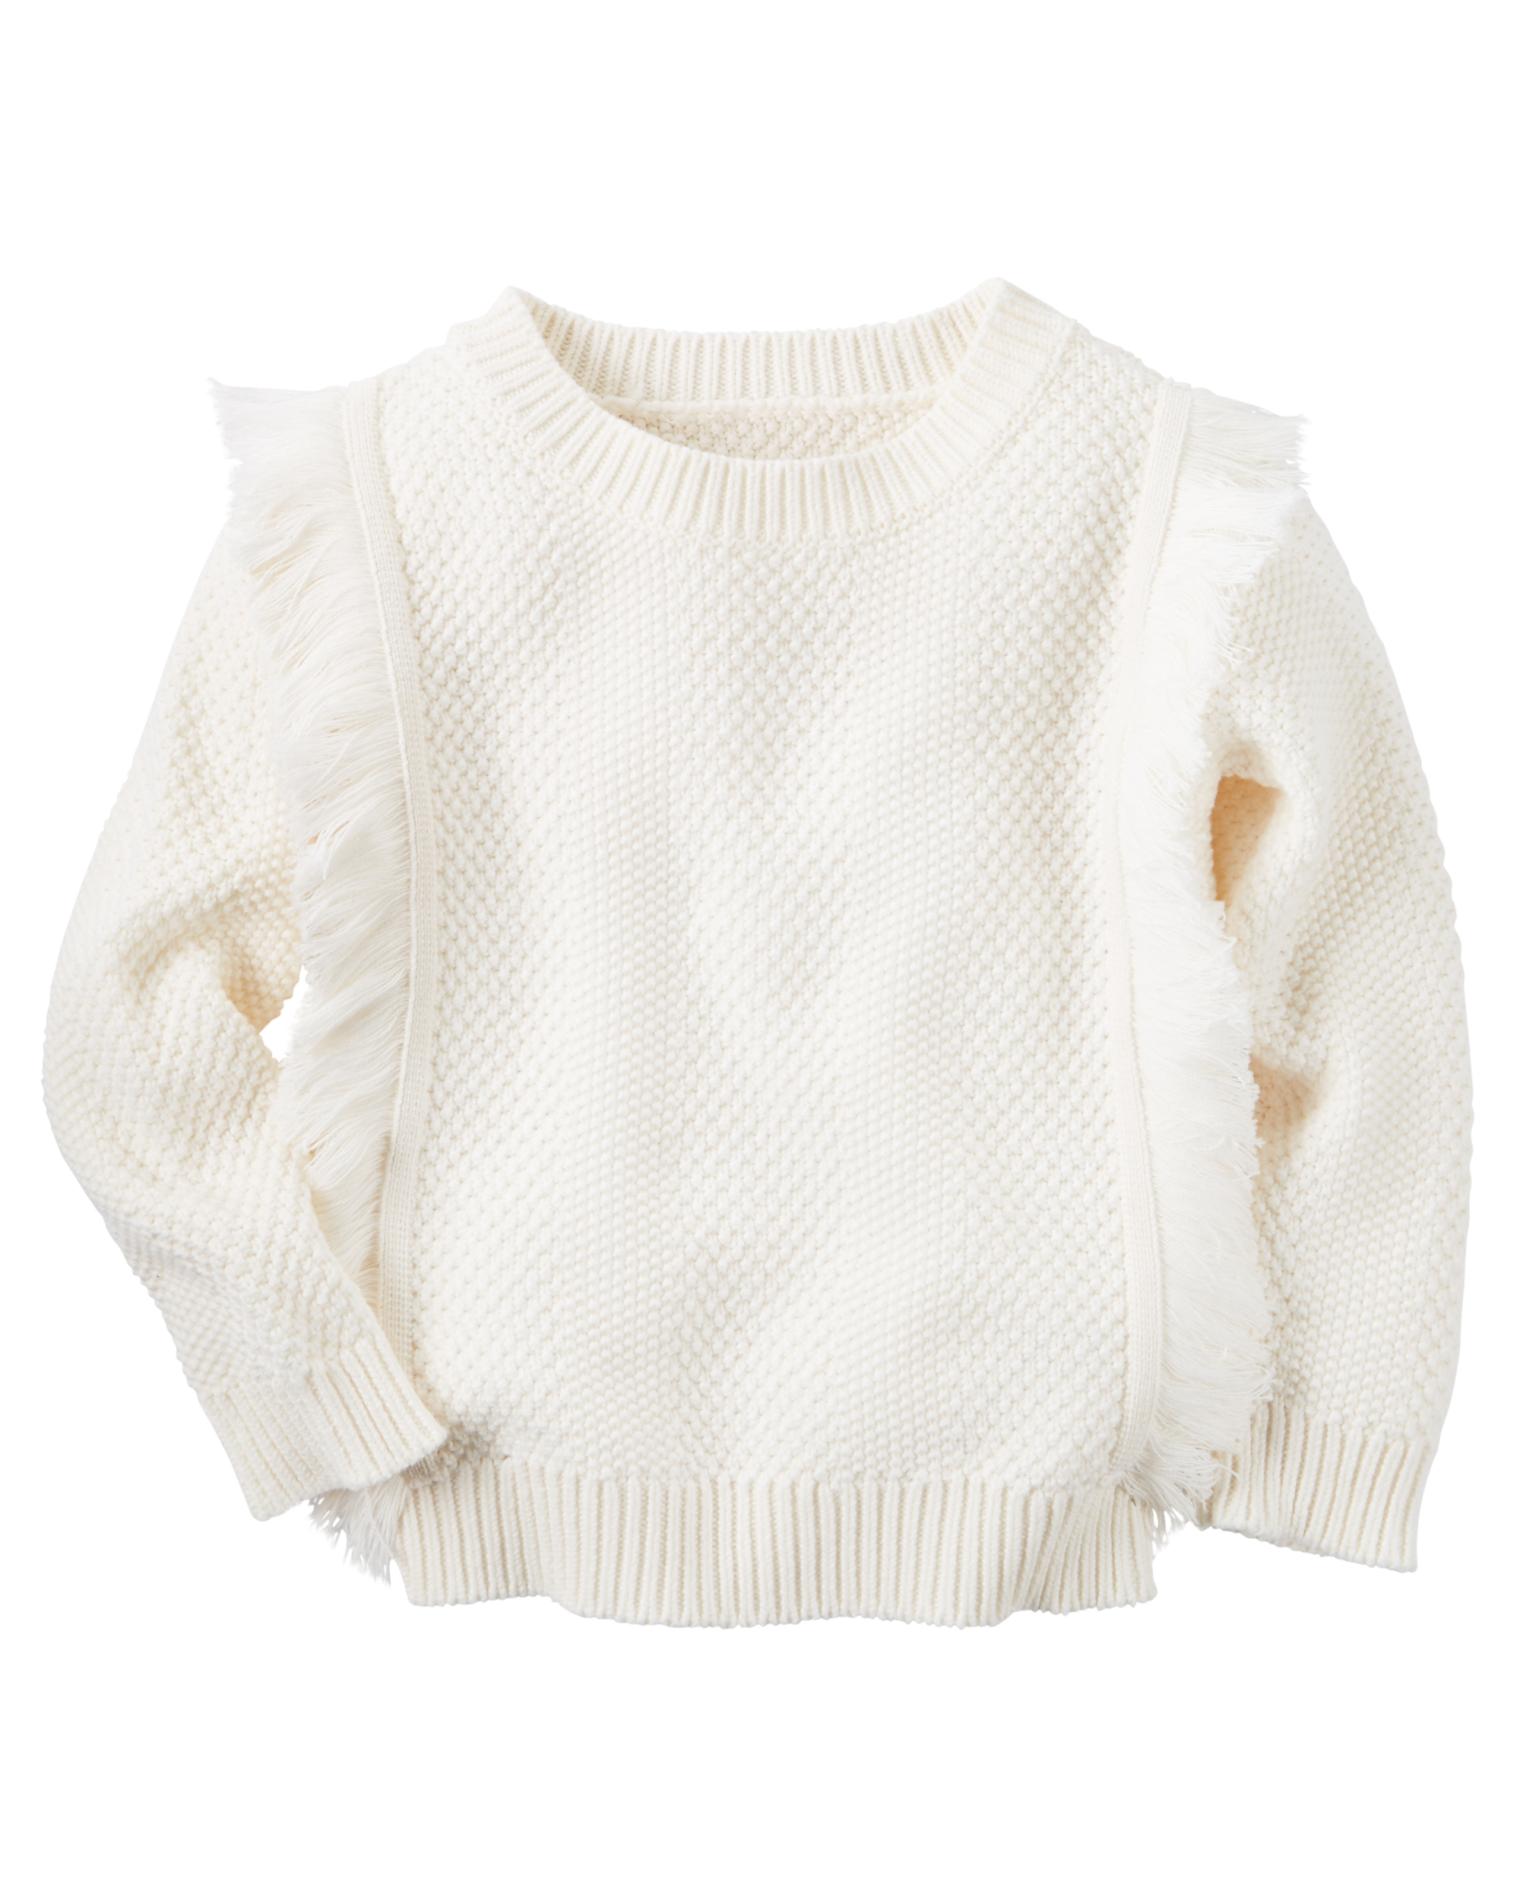 Carter's Toddler Girls' Fringe Sweater